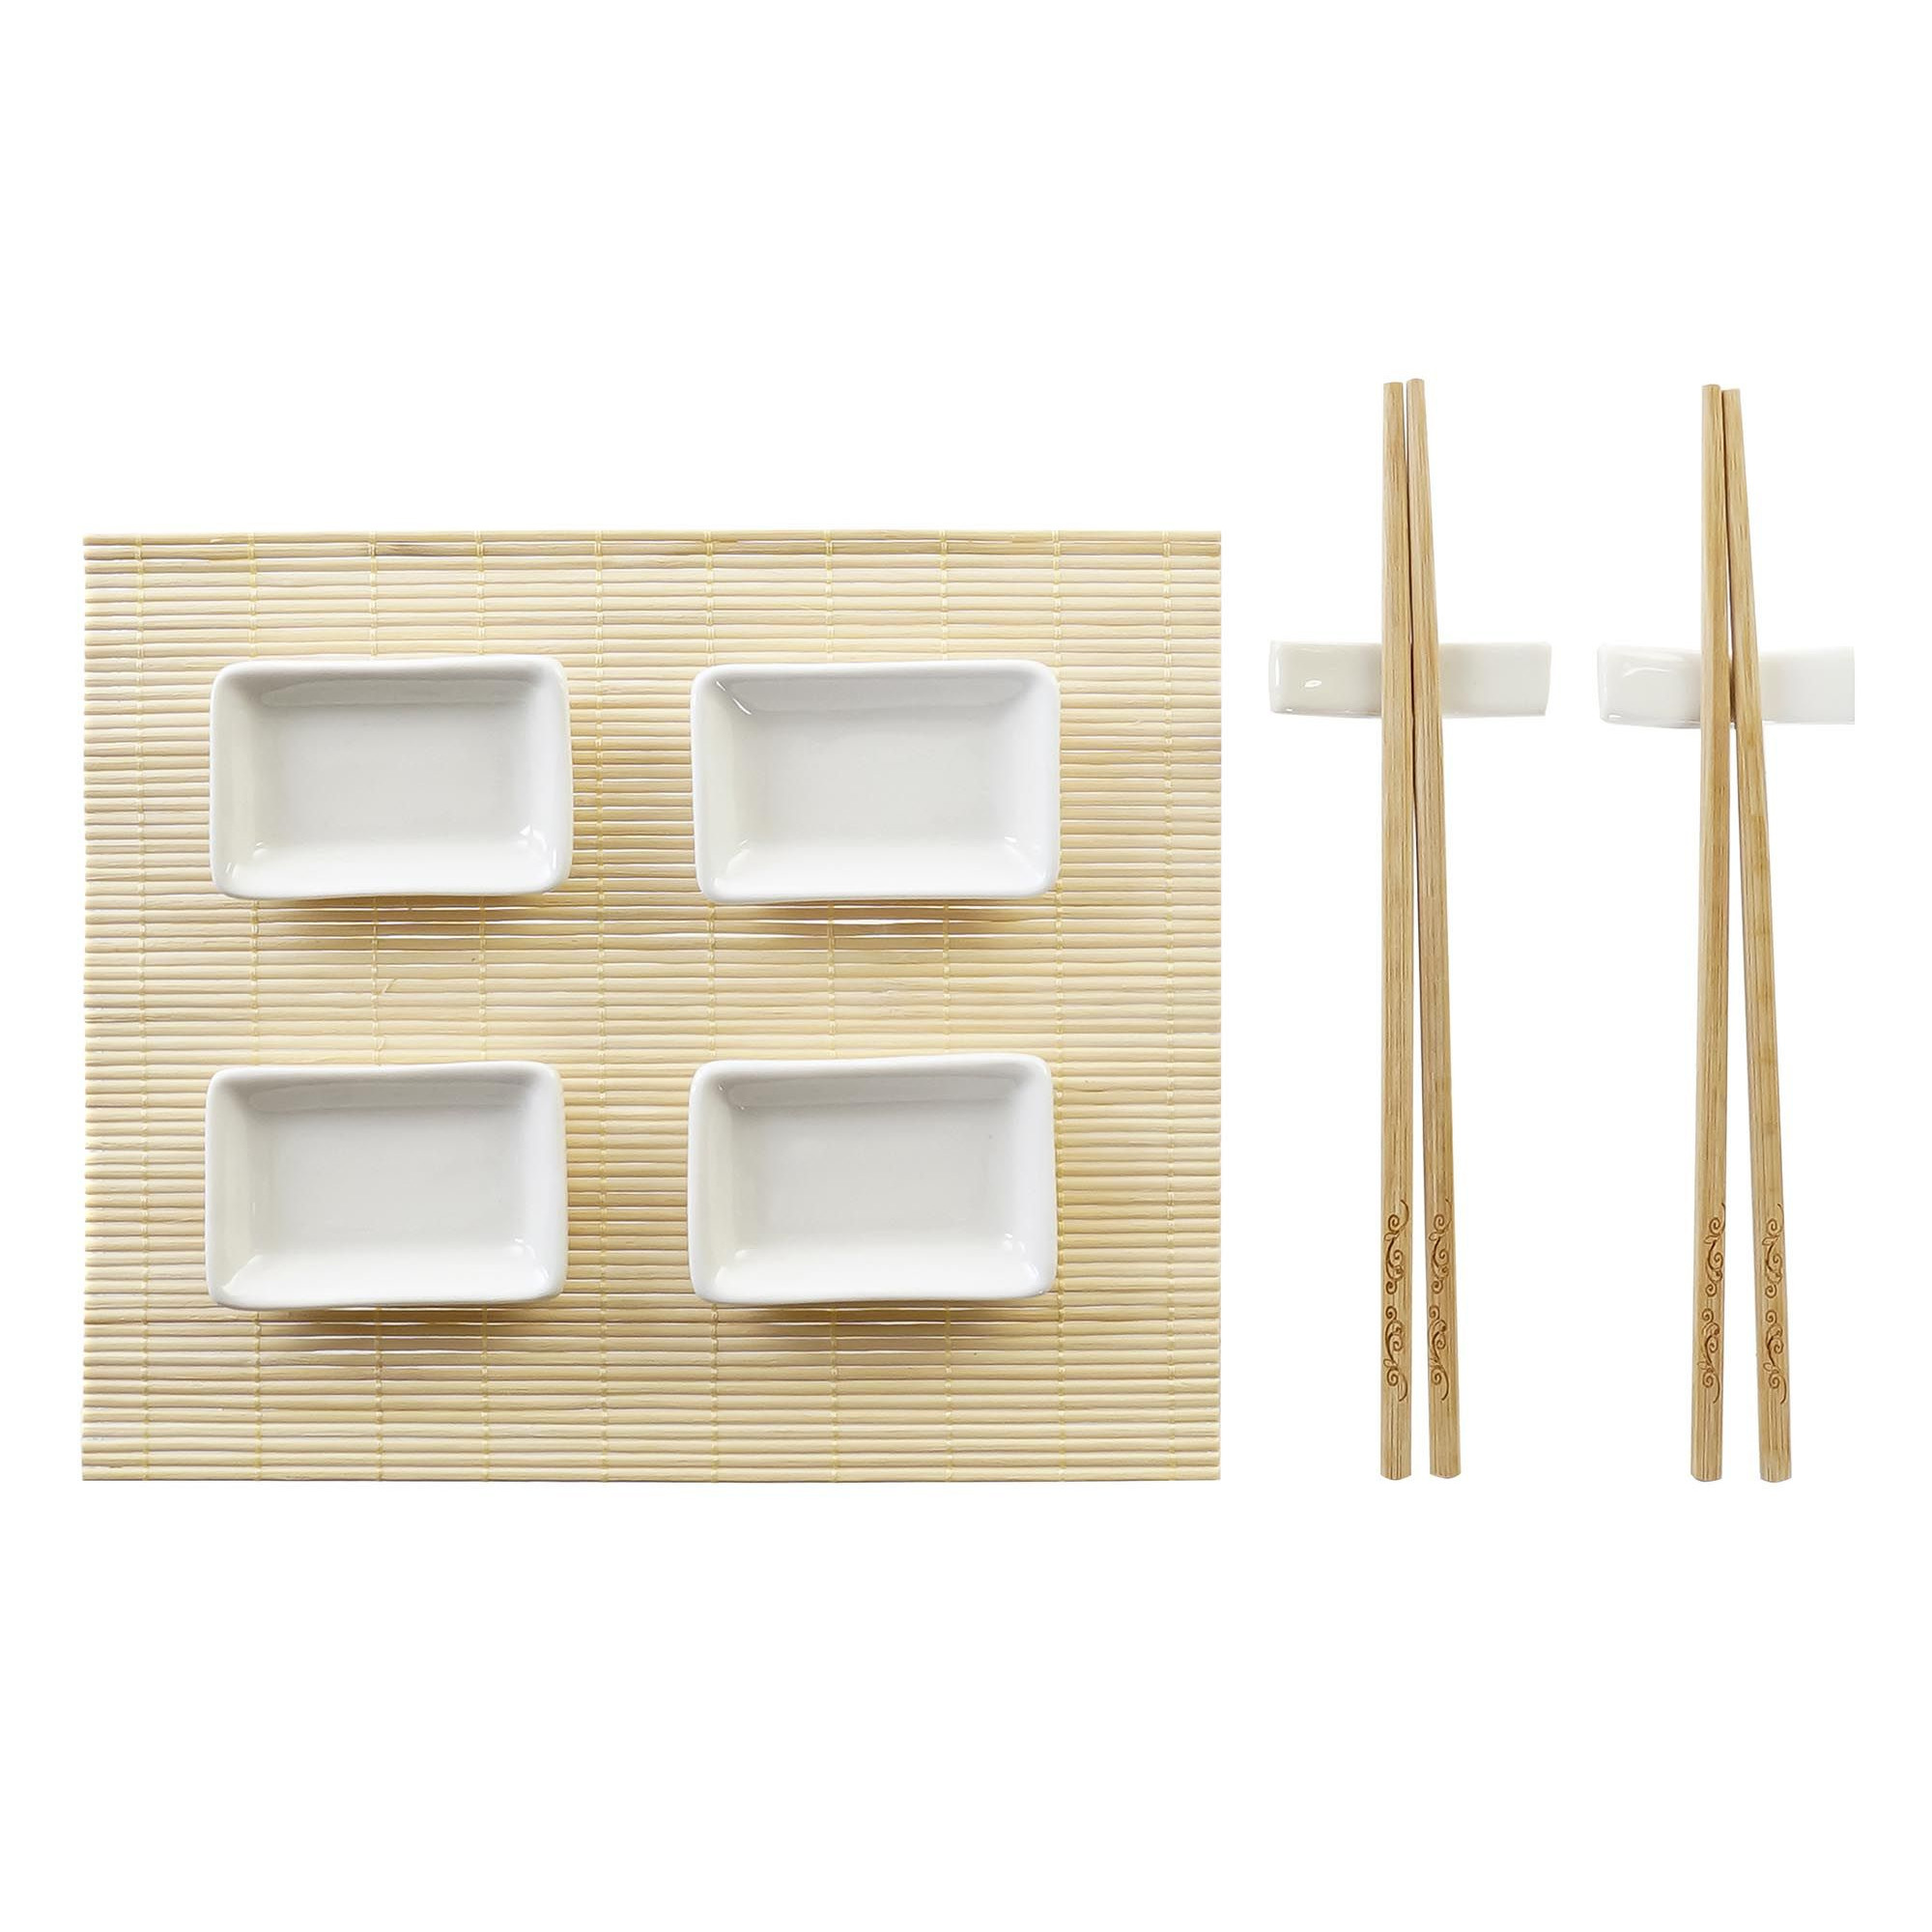 Items 9-delige sushi serveer set bamboe voor 2 personen -